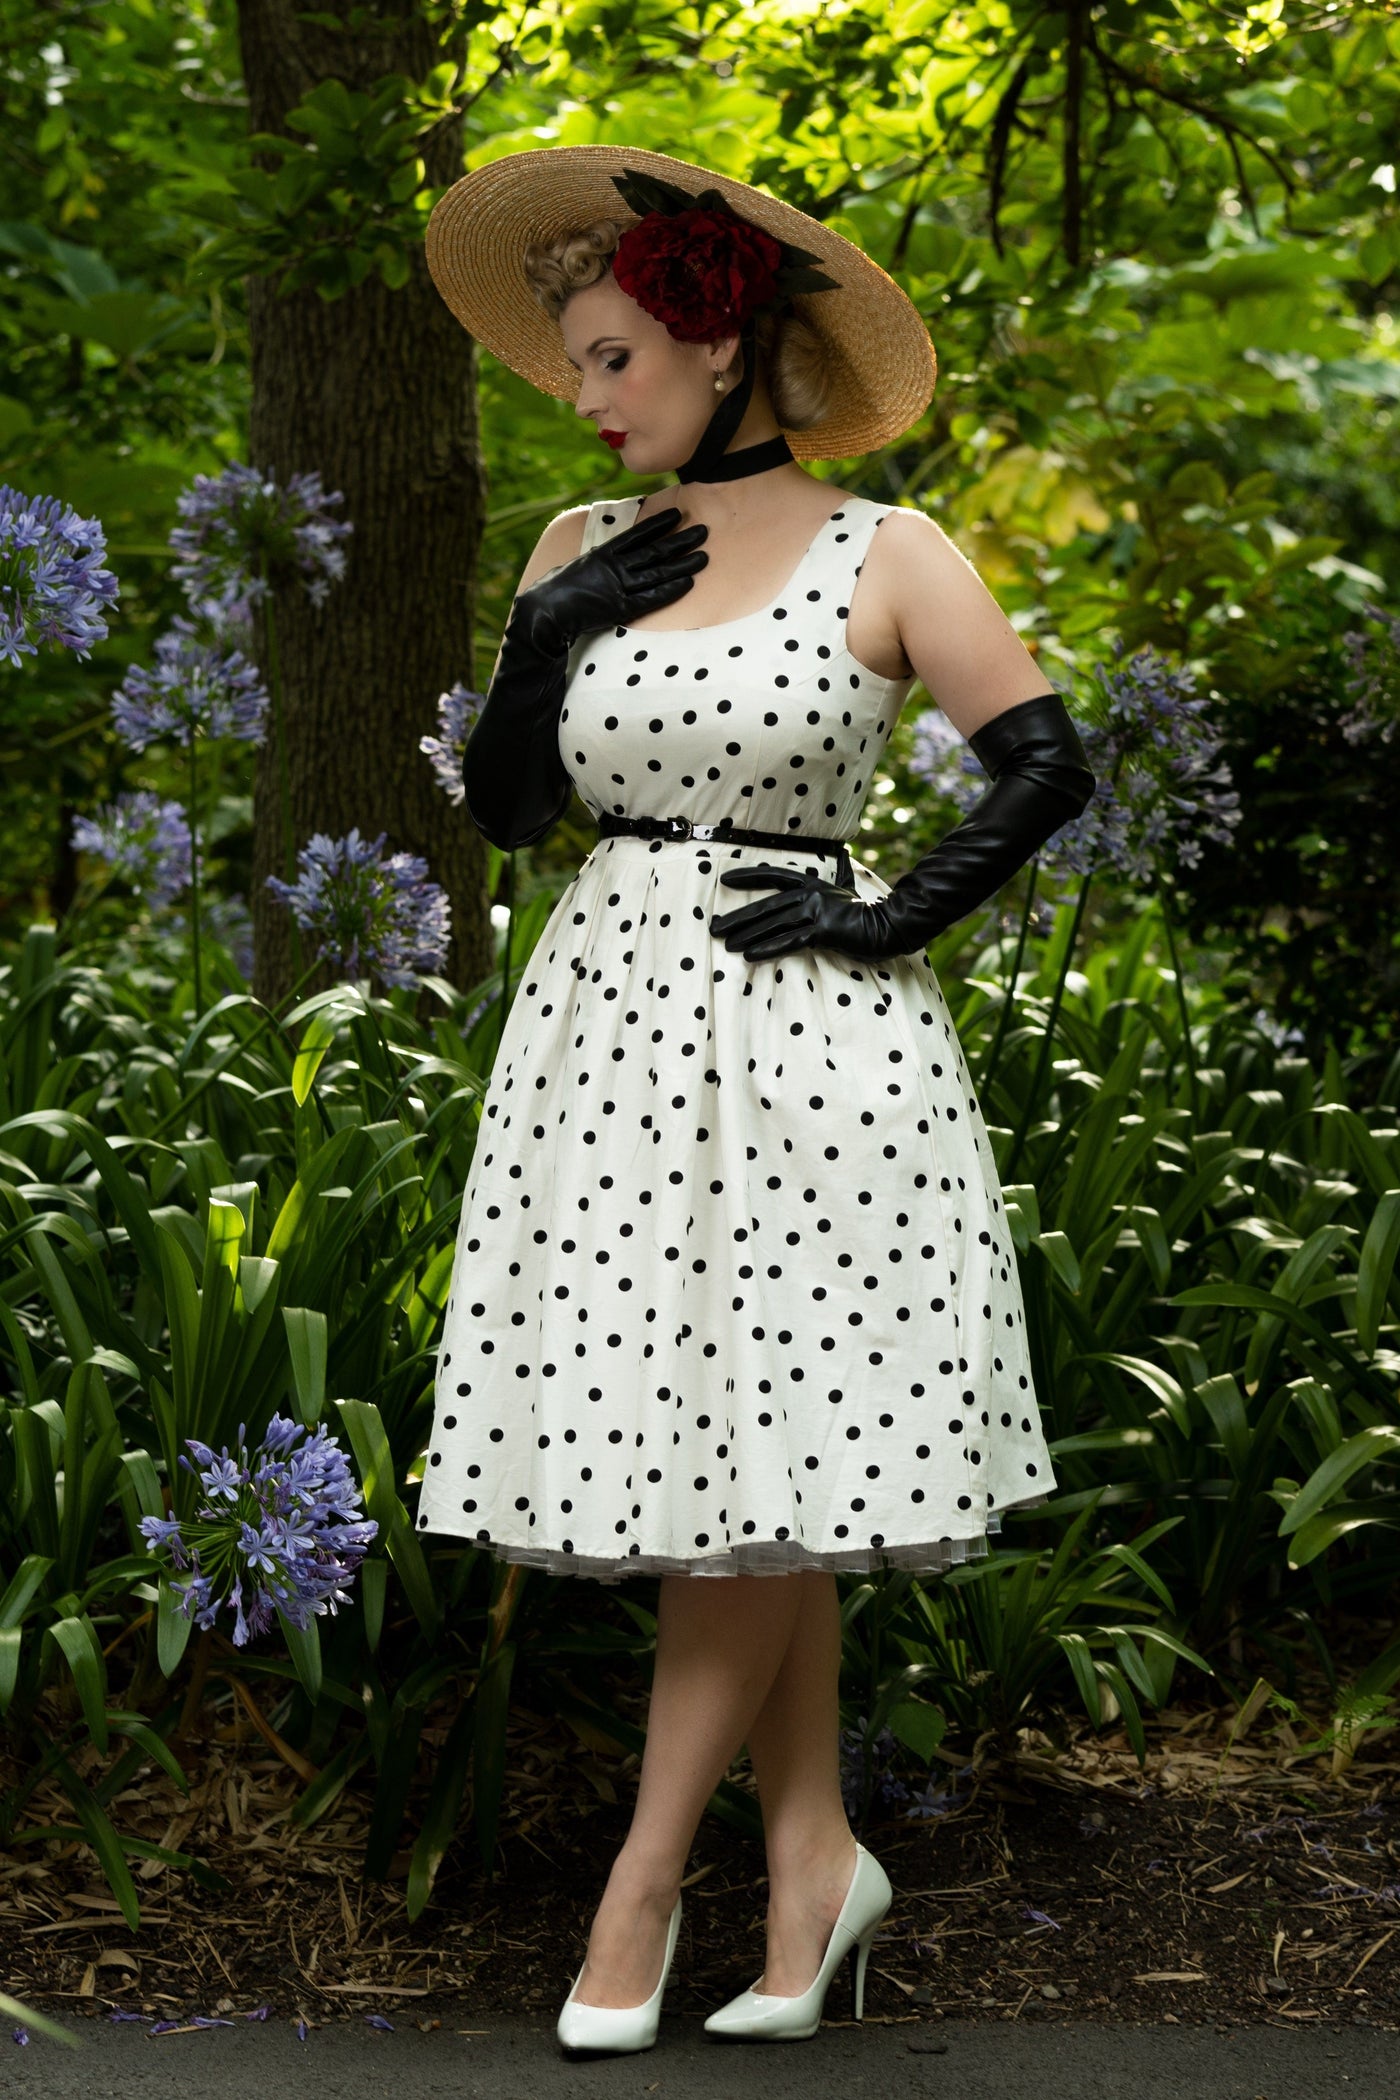 Amanda Scoop Neck Polka Dot Swing Dress in White-Black